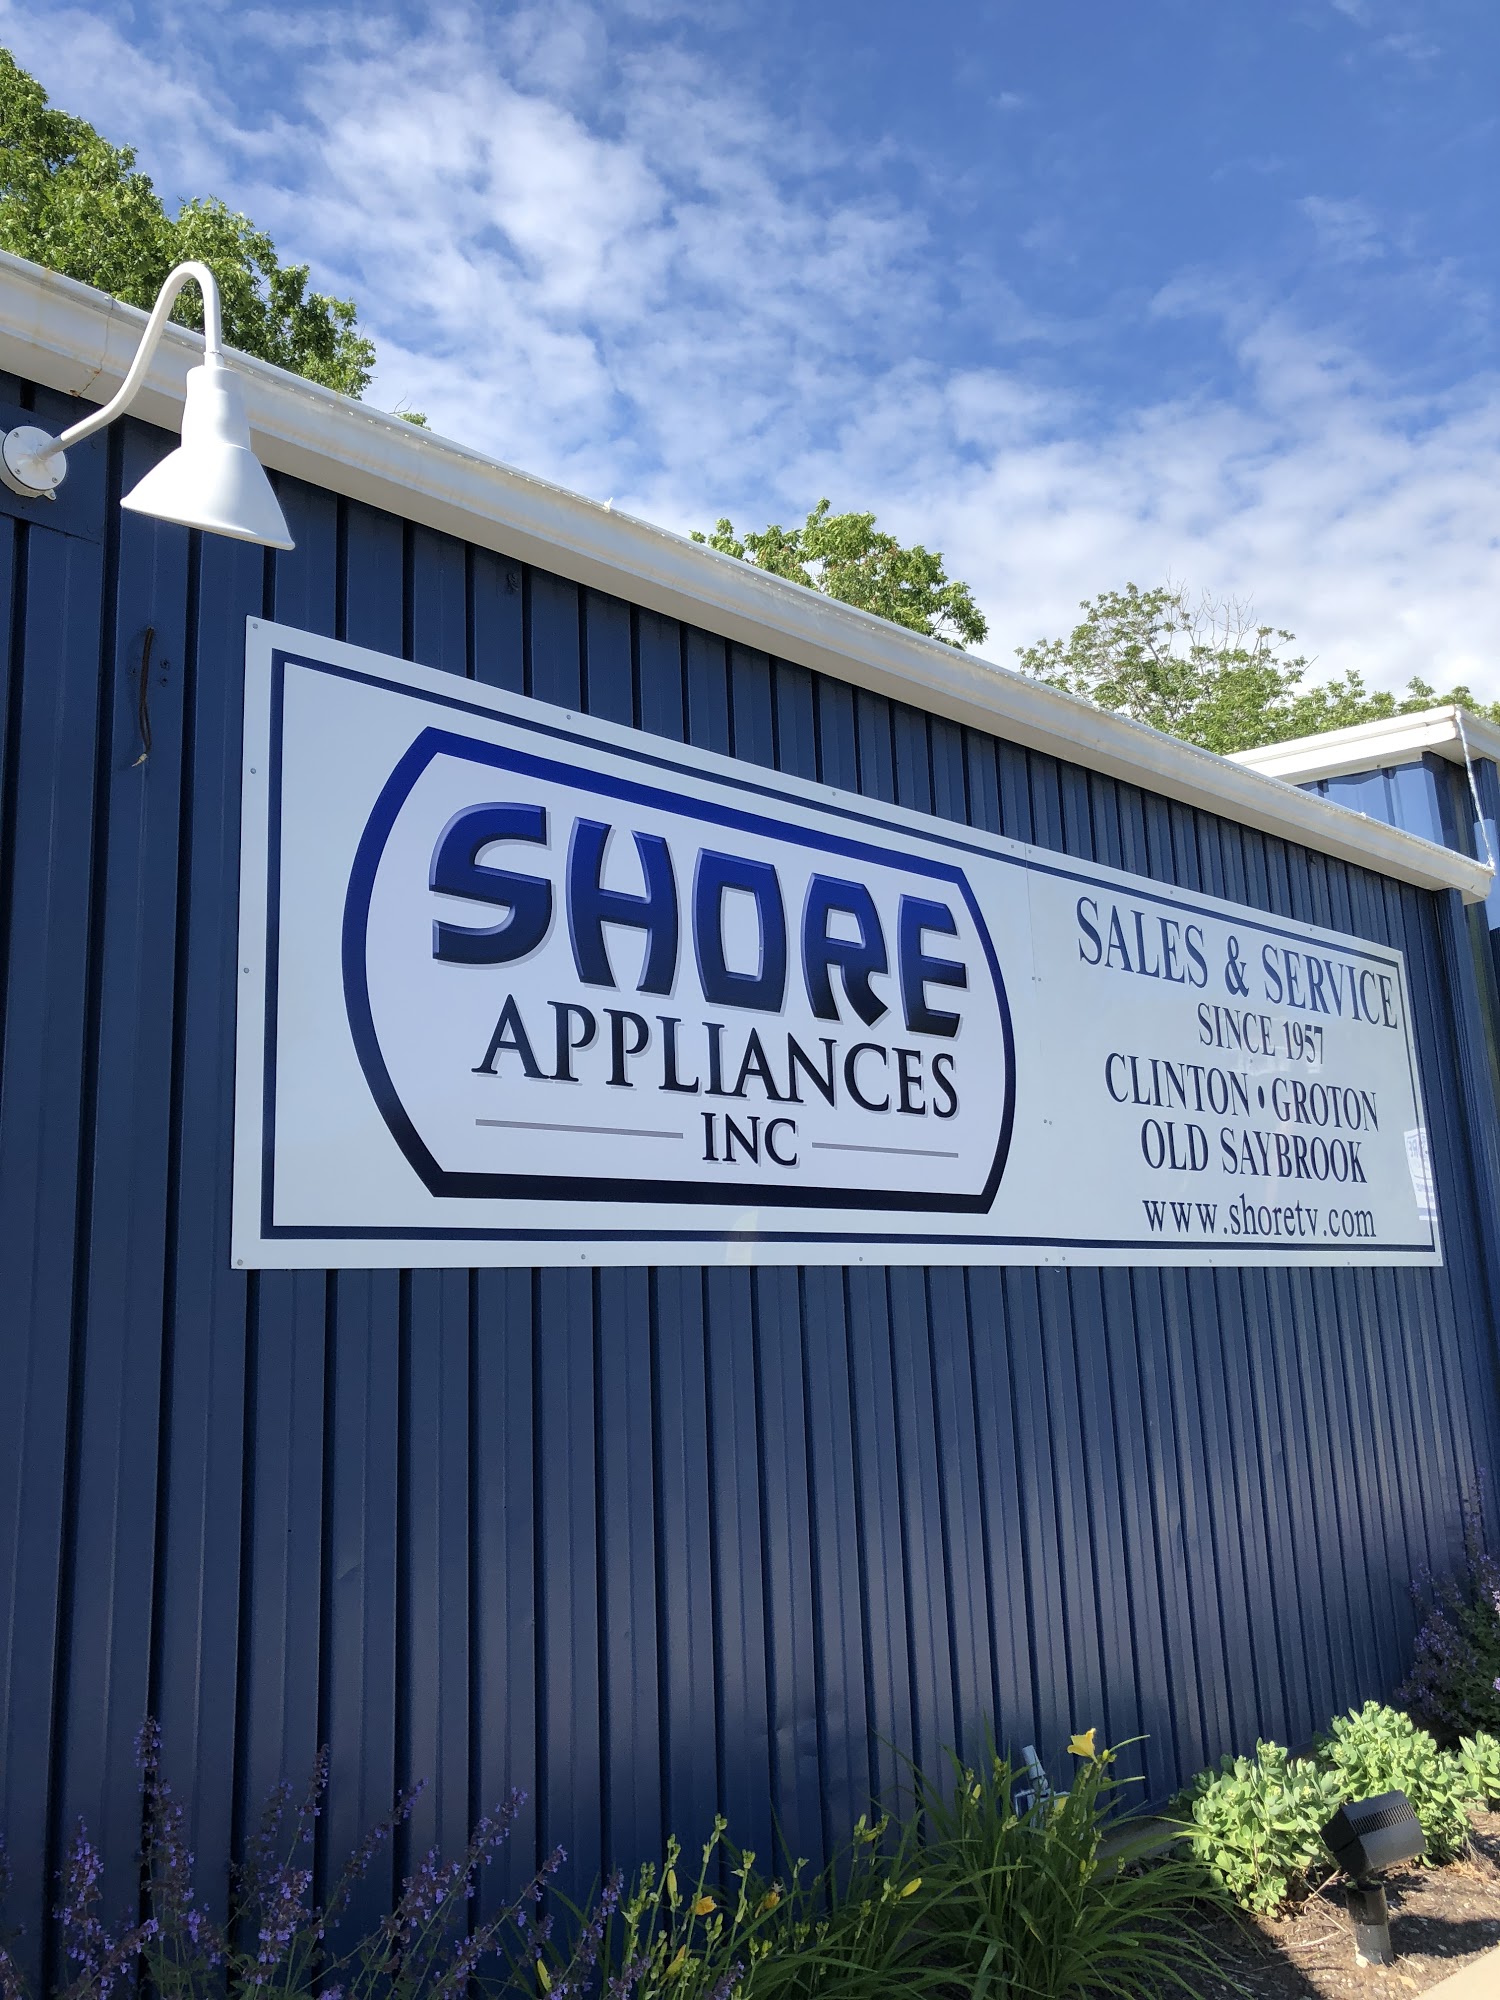 Shore Appliances Inc